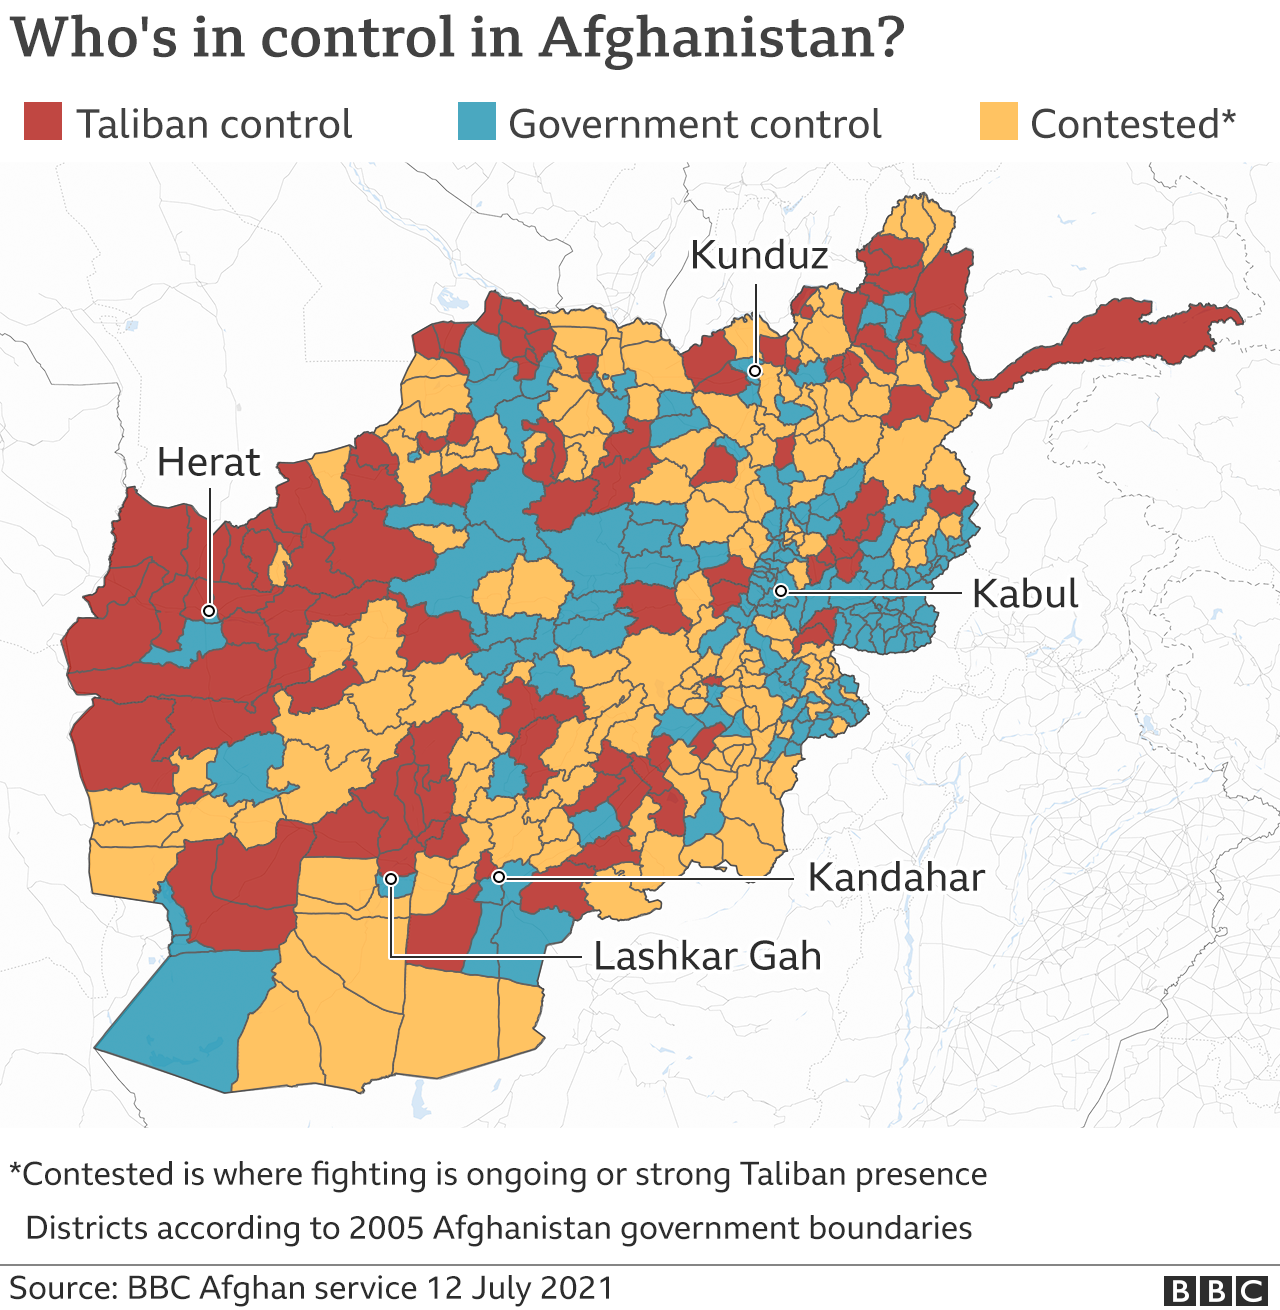 Карта, показывающая районы, контролируемые Талибаном и правительством